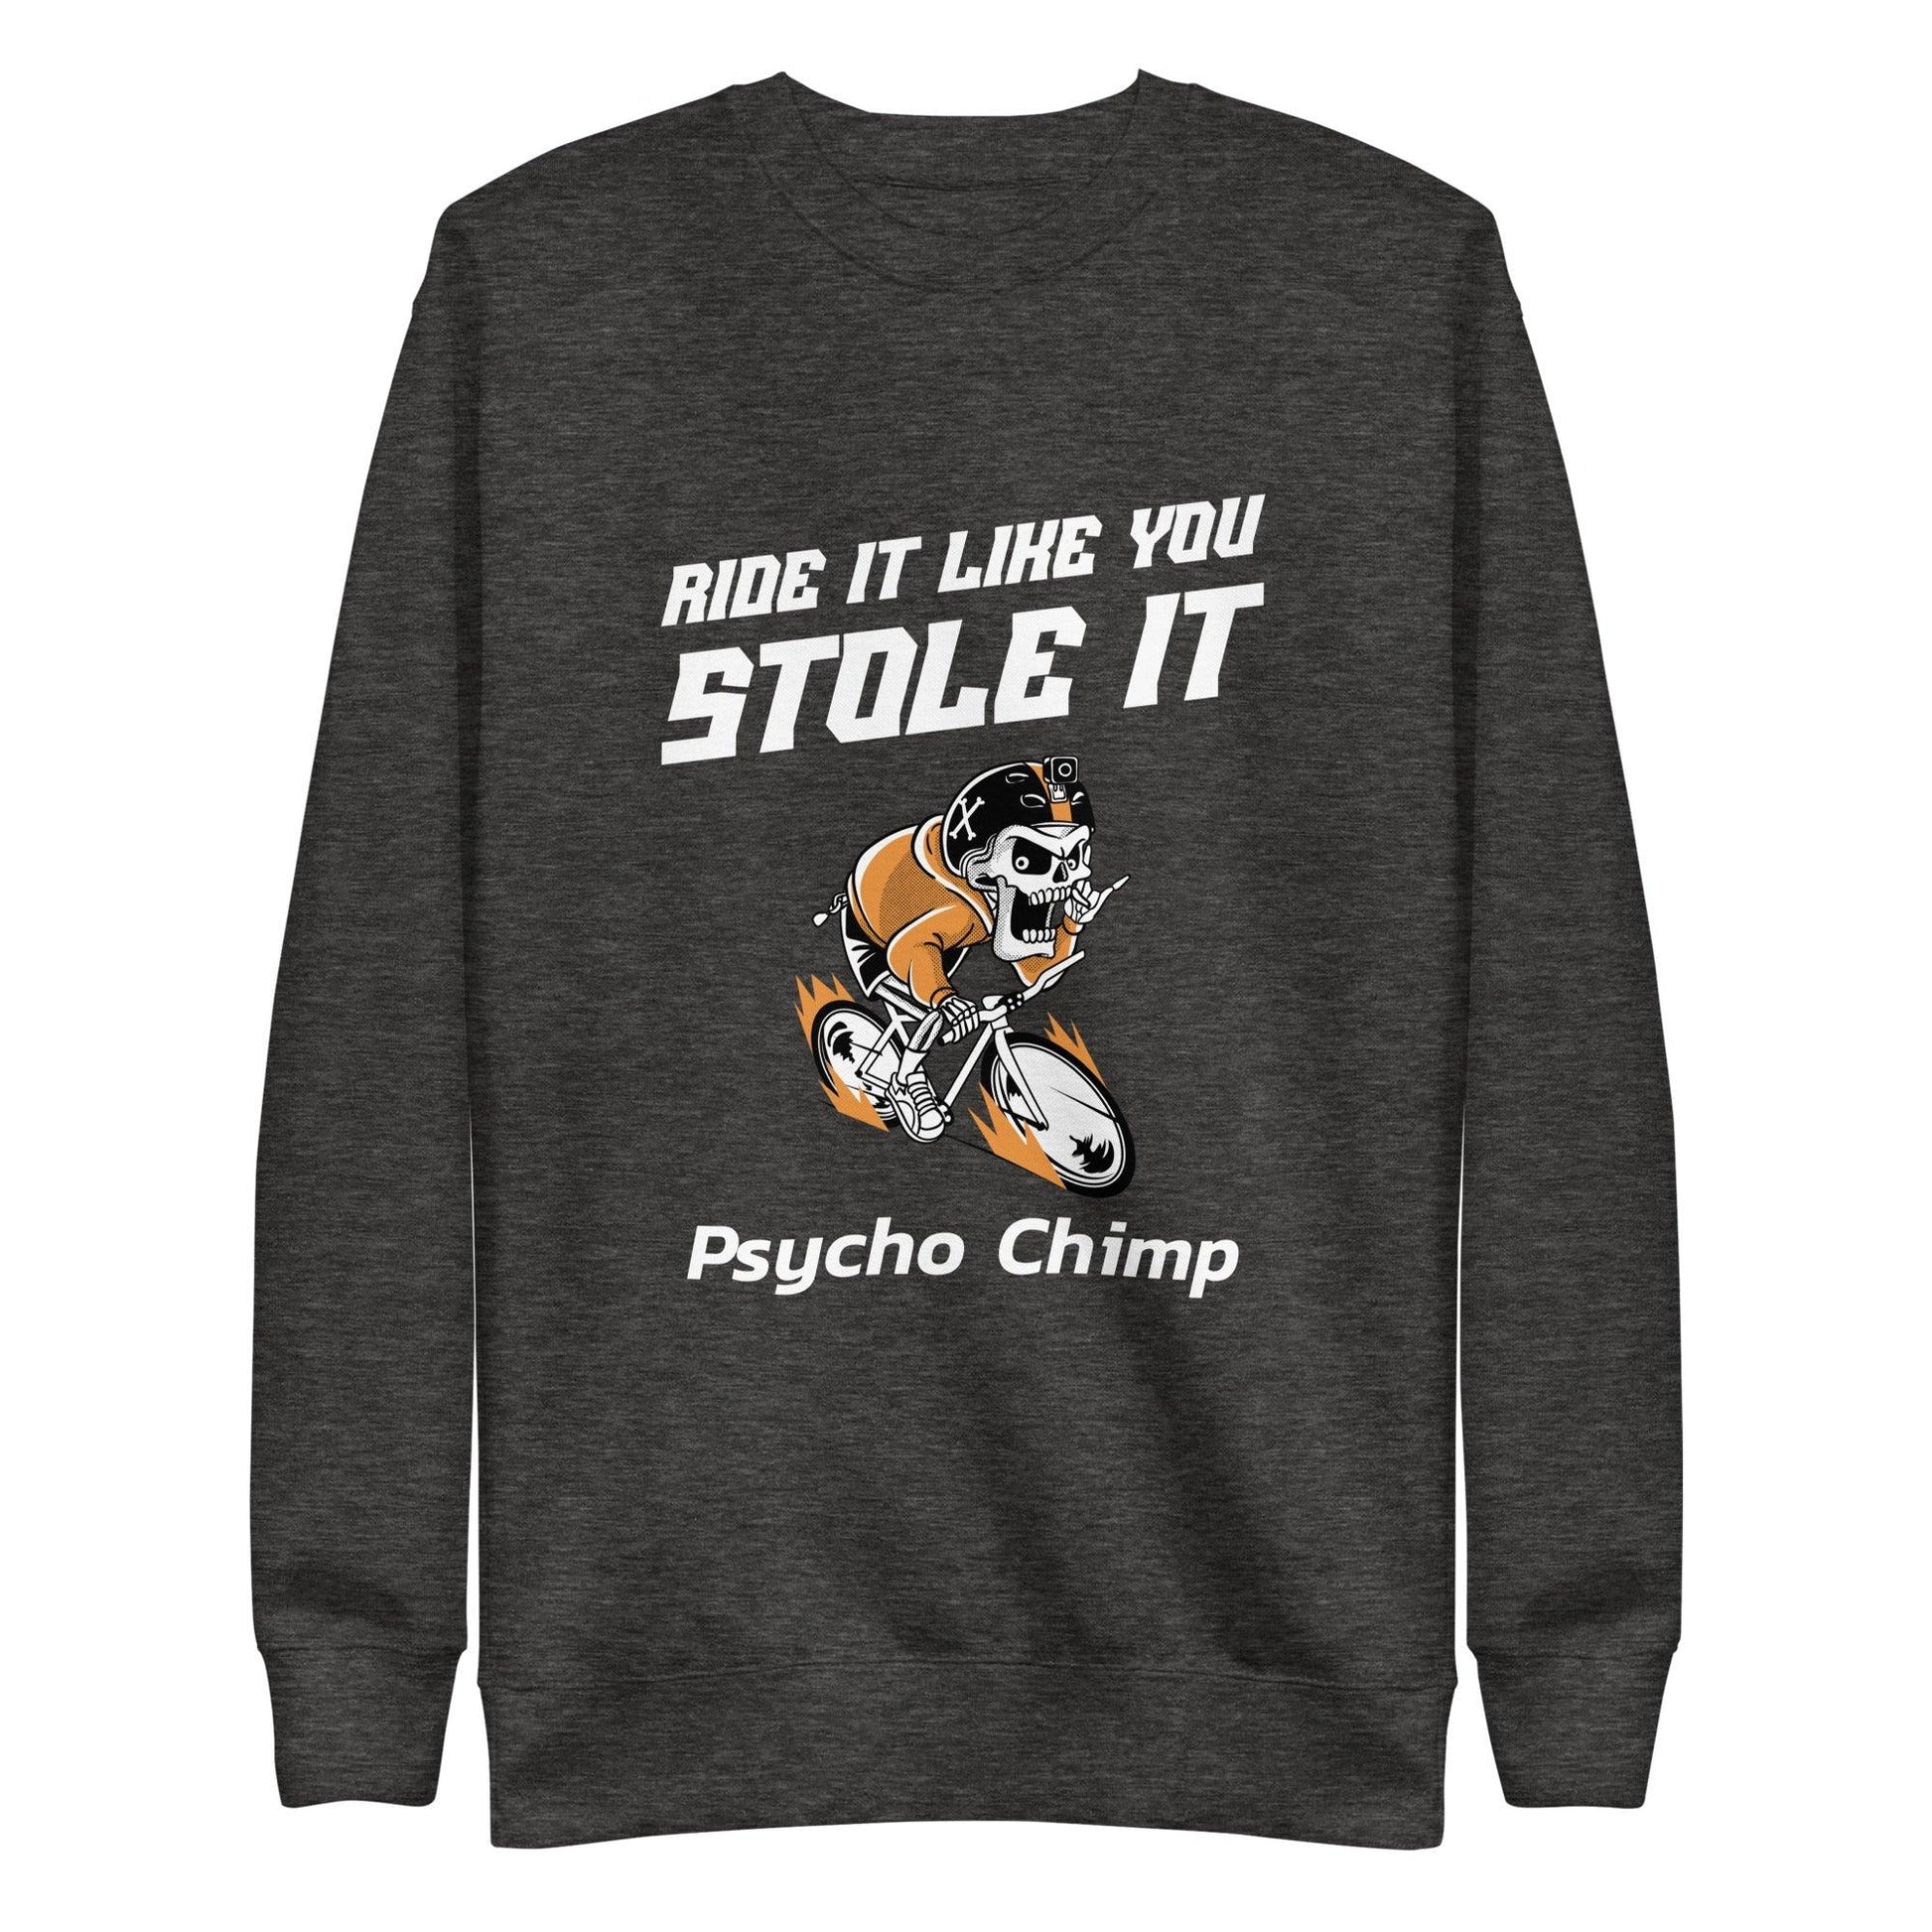 Men's Premium Sweatshirt - Psycho Chimp